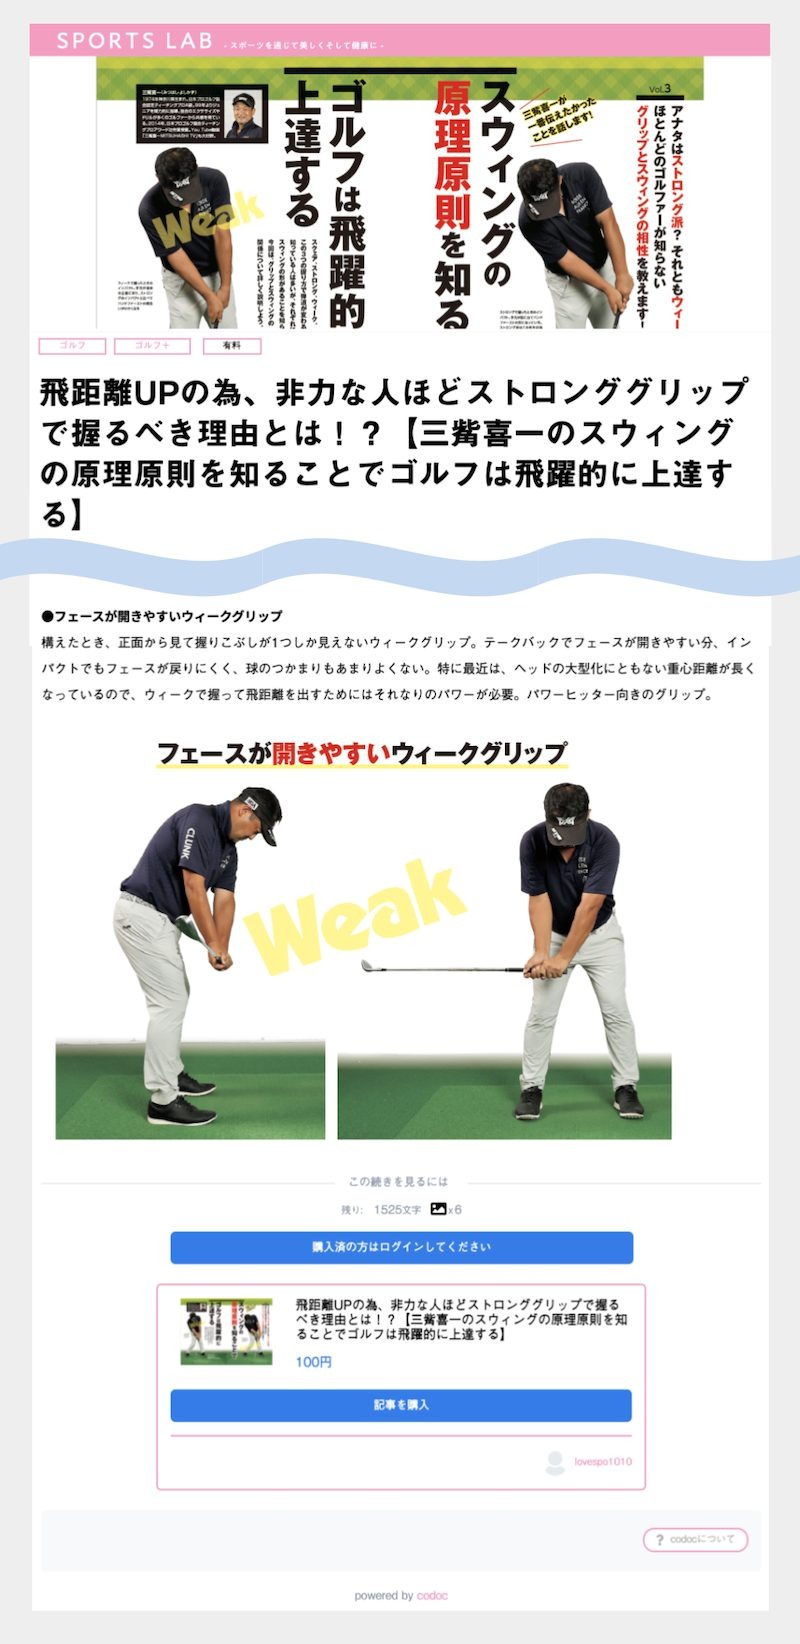 ログリー、総合スポーツ情報サイト「ラブすぽ」にコンテンツ販売機能を提供・・・ゴルフ雑誌の一部をデジタル化販売